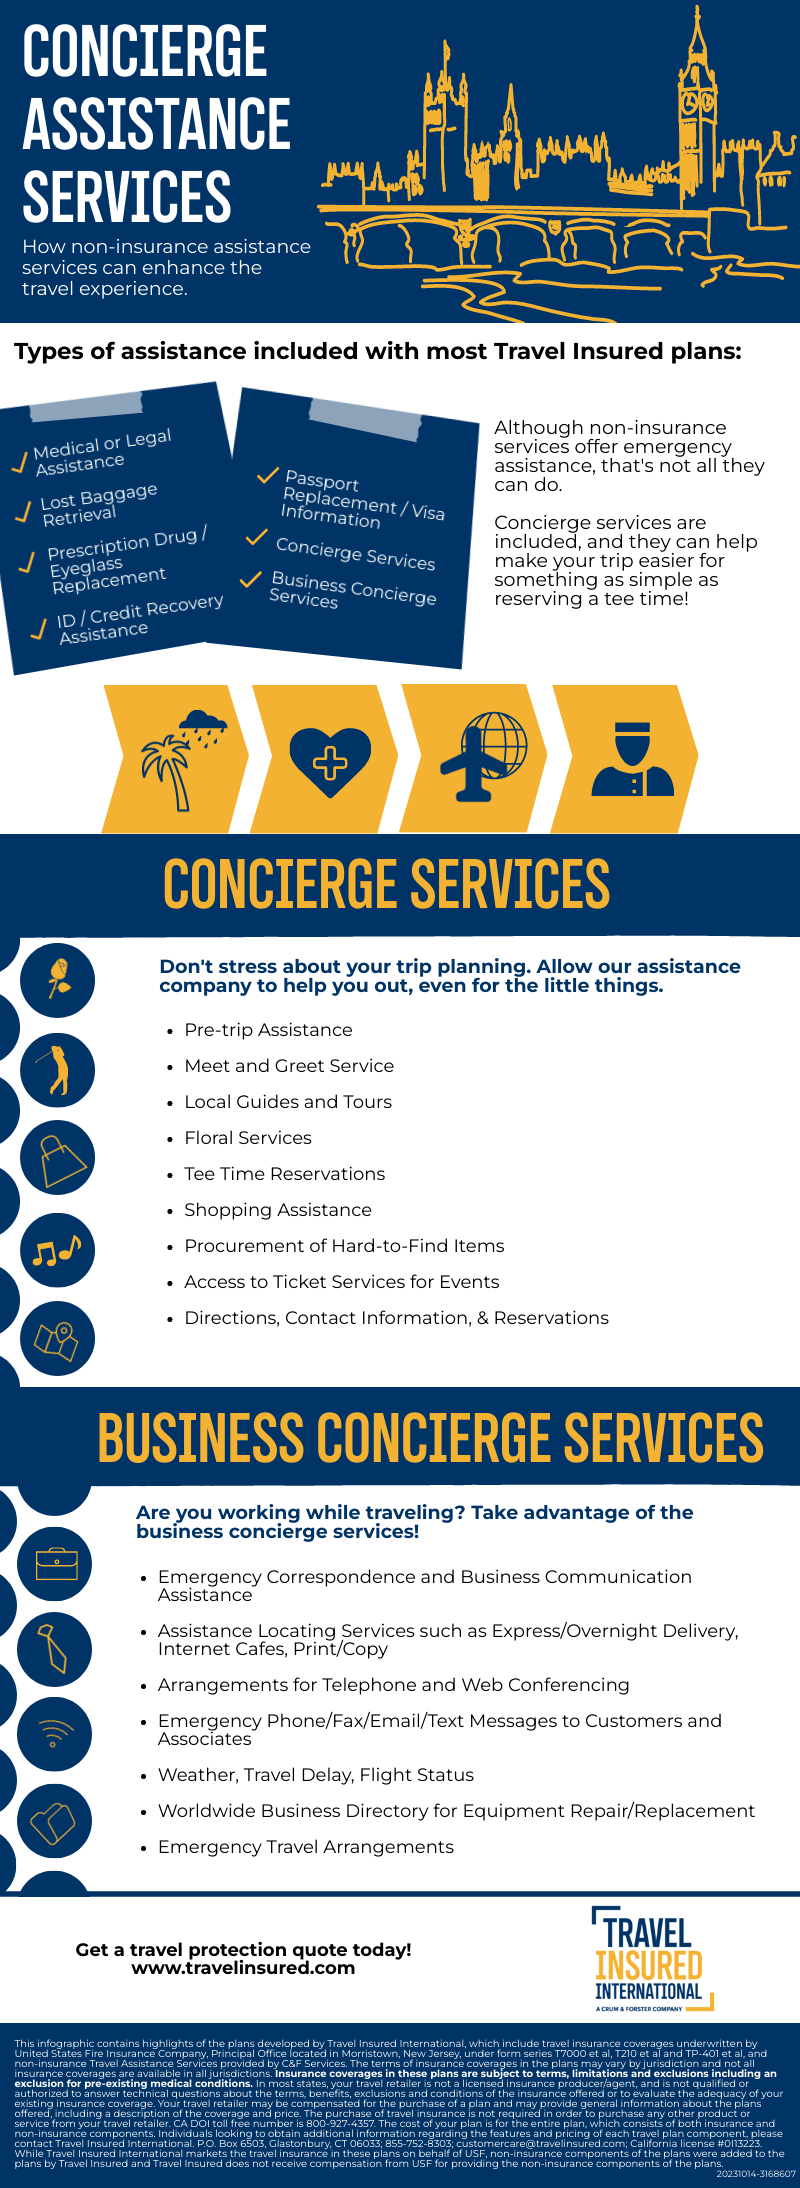 Concierge Assistance Services